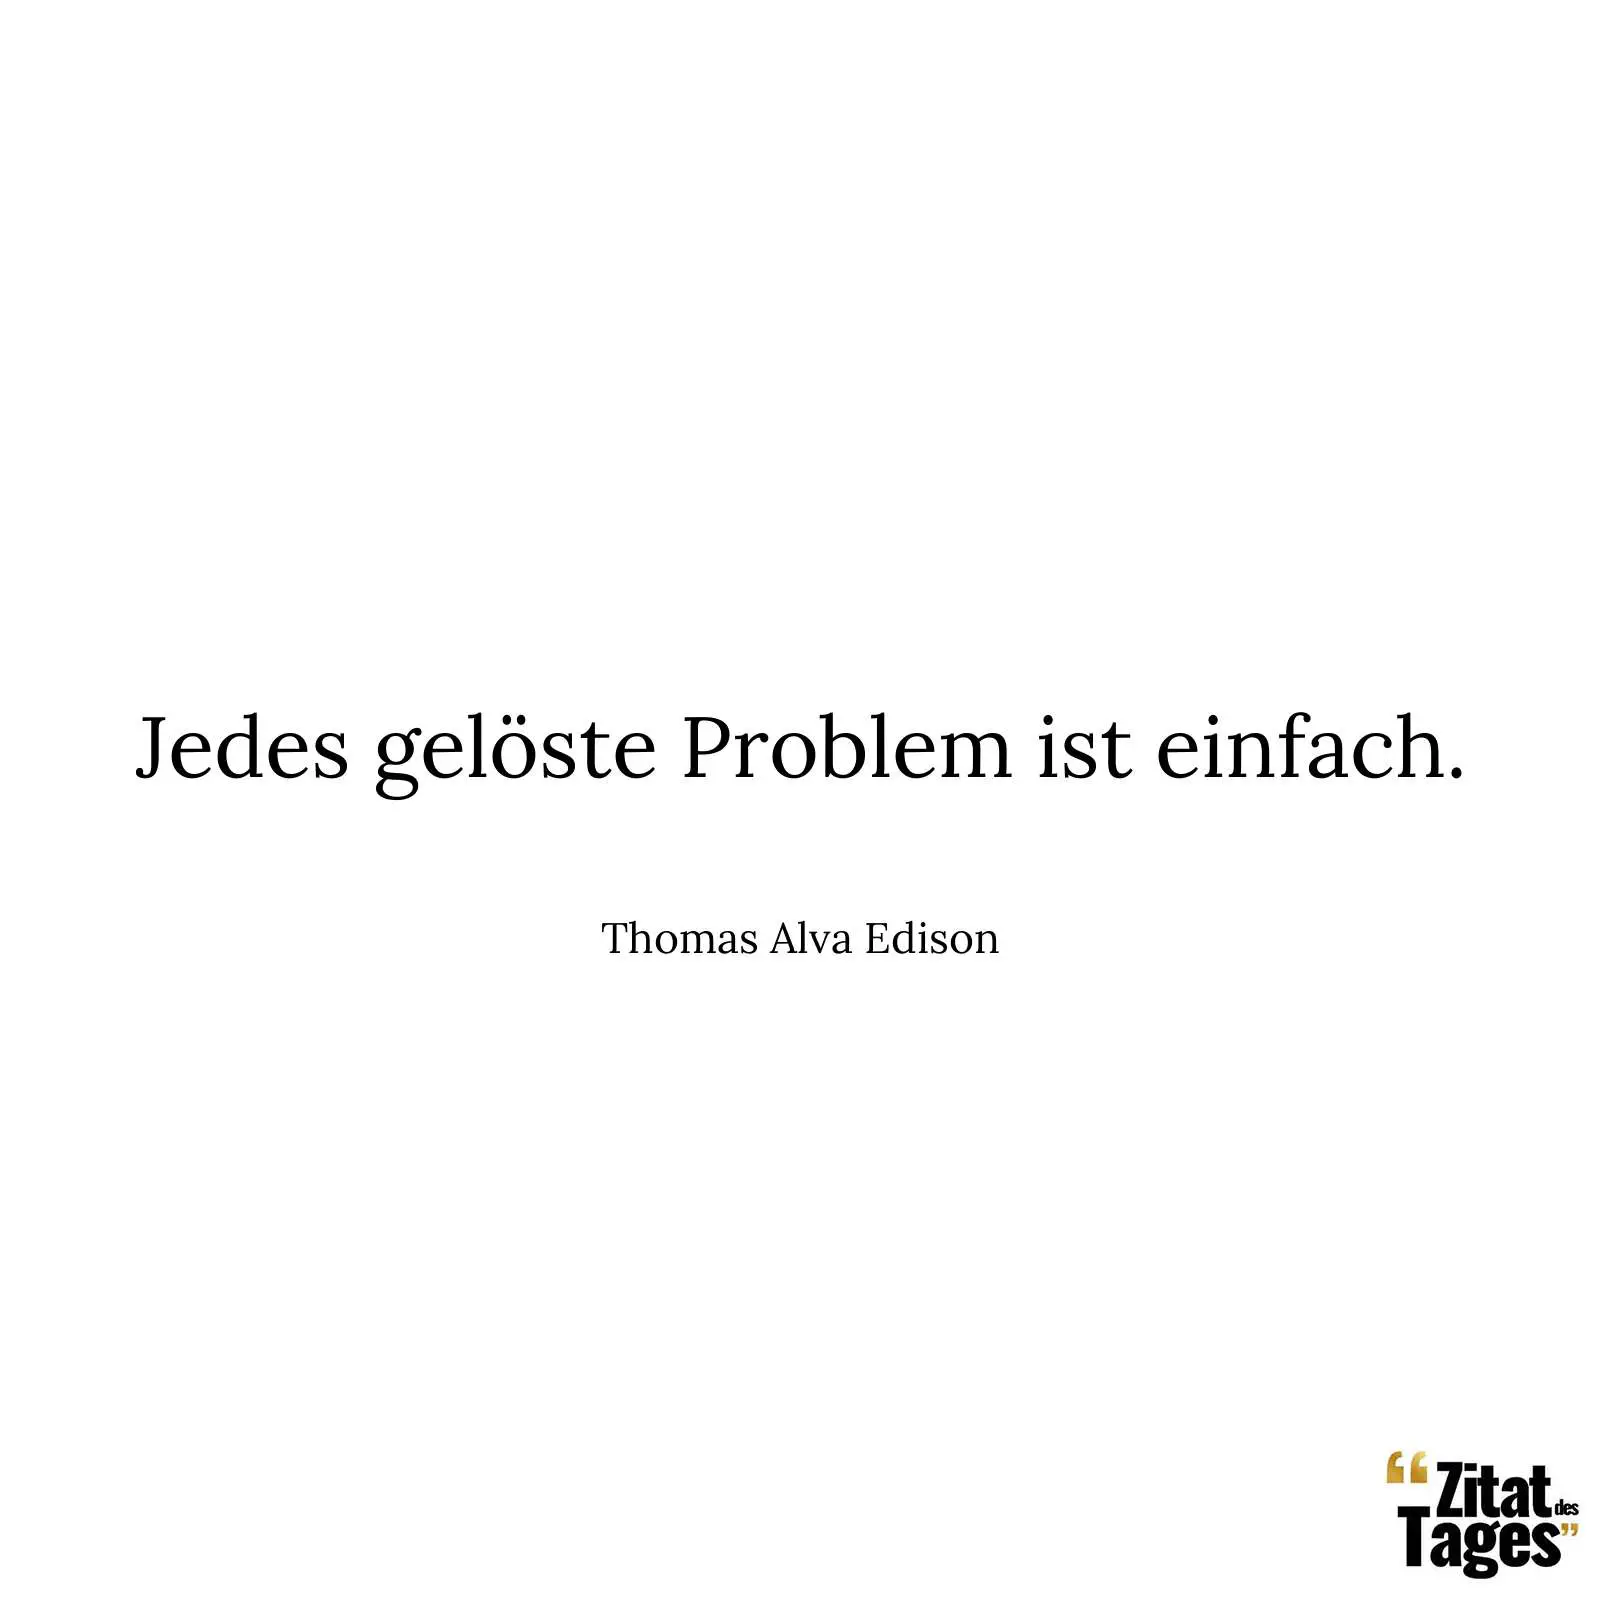 Jedes gelöste Problem ist einfach. - Thomas Alva Edison